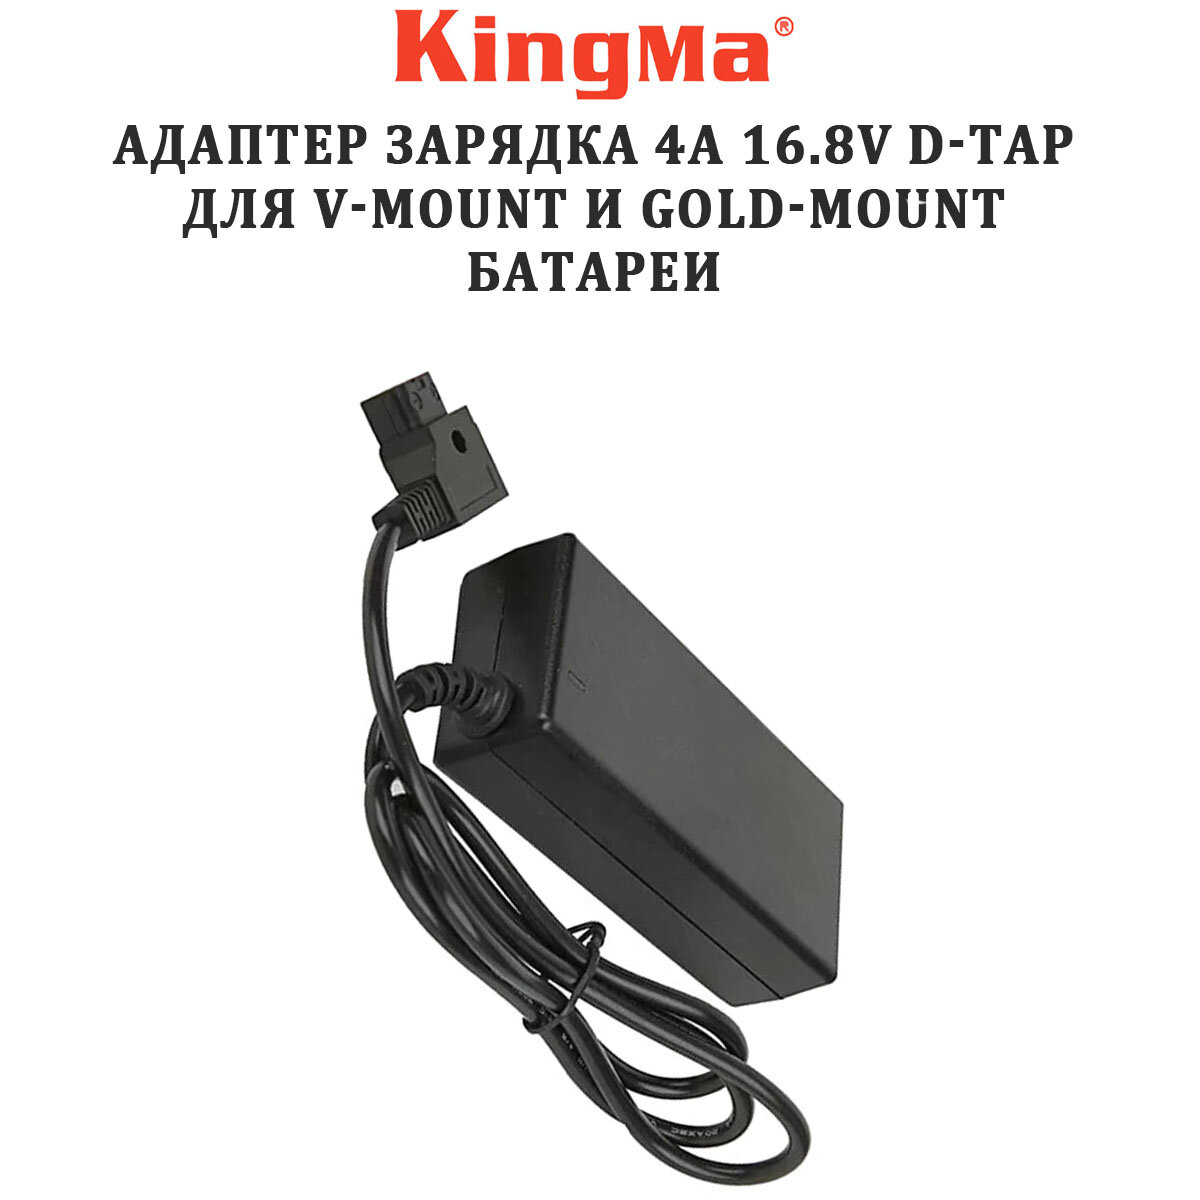 Зарядное устройство KingMa D-Tap 16.8V 4 A для V-Mount и Gold-Mount батареи